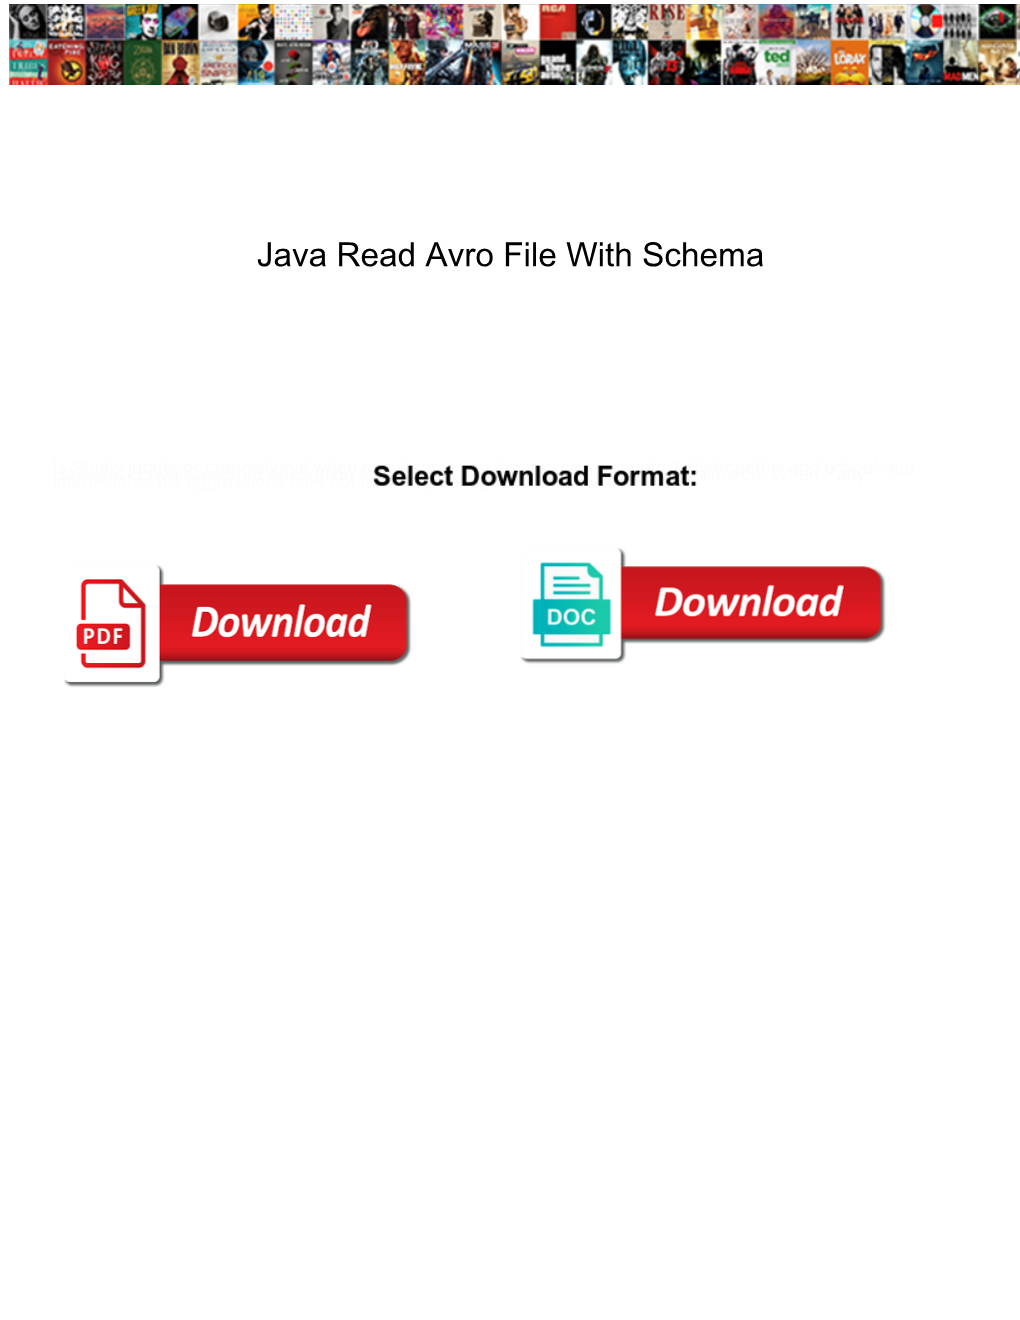 Java Read Avro File with Schema